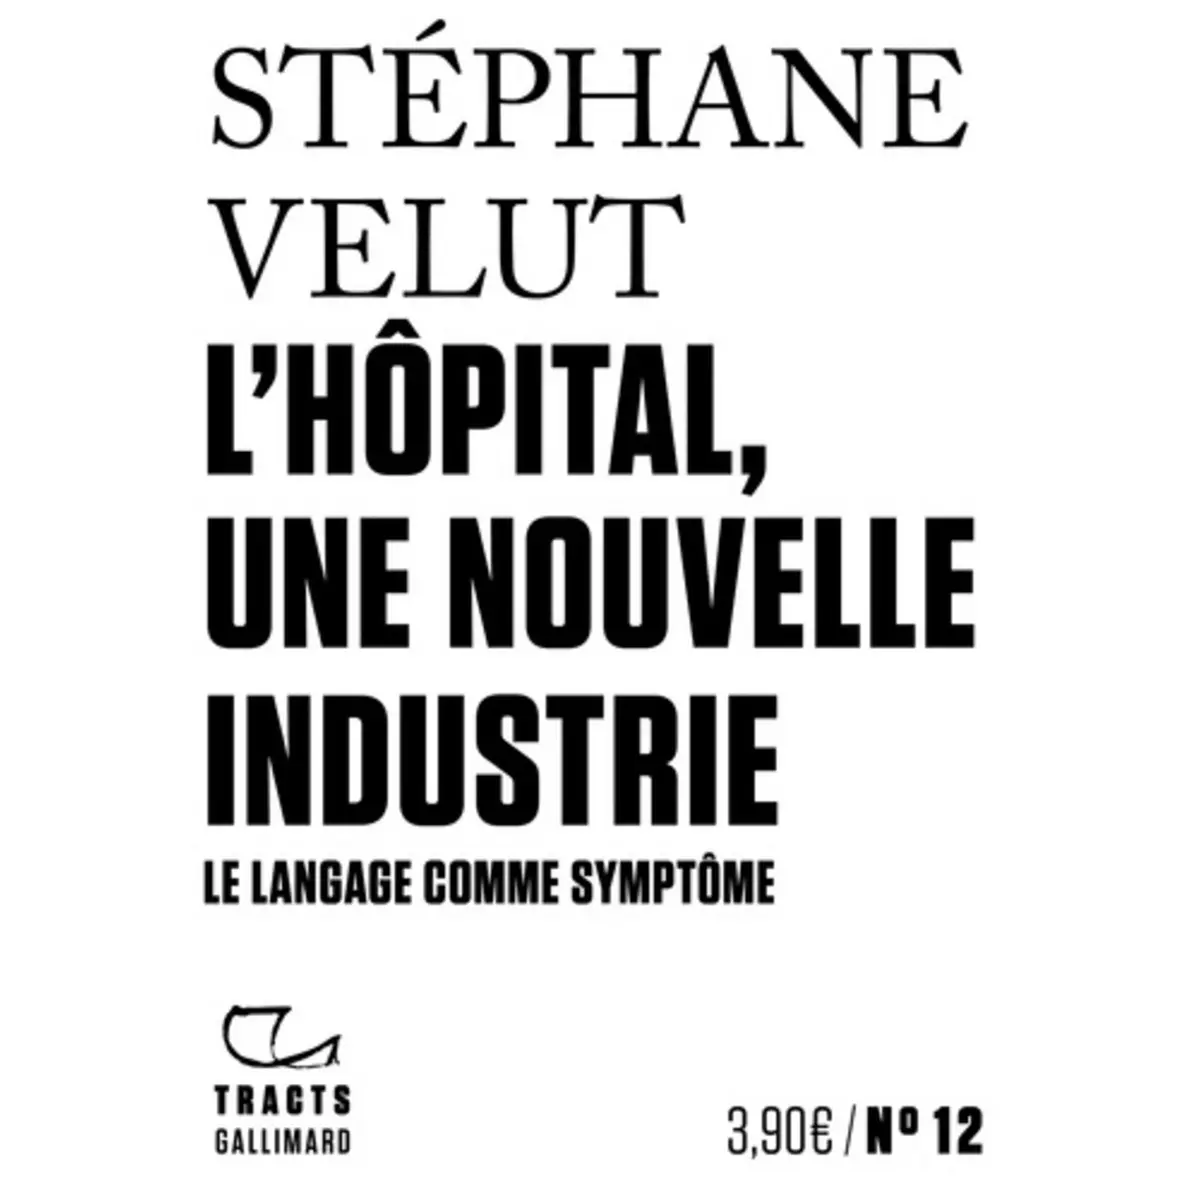  L'HOPITAL, UNE NOUVELLE INDUSTRIE. LE LANGAGE COMME SYMPTOME, Velut Stéphane